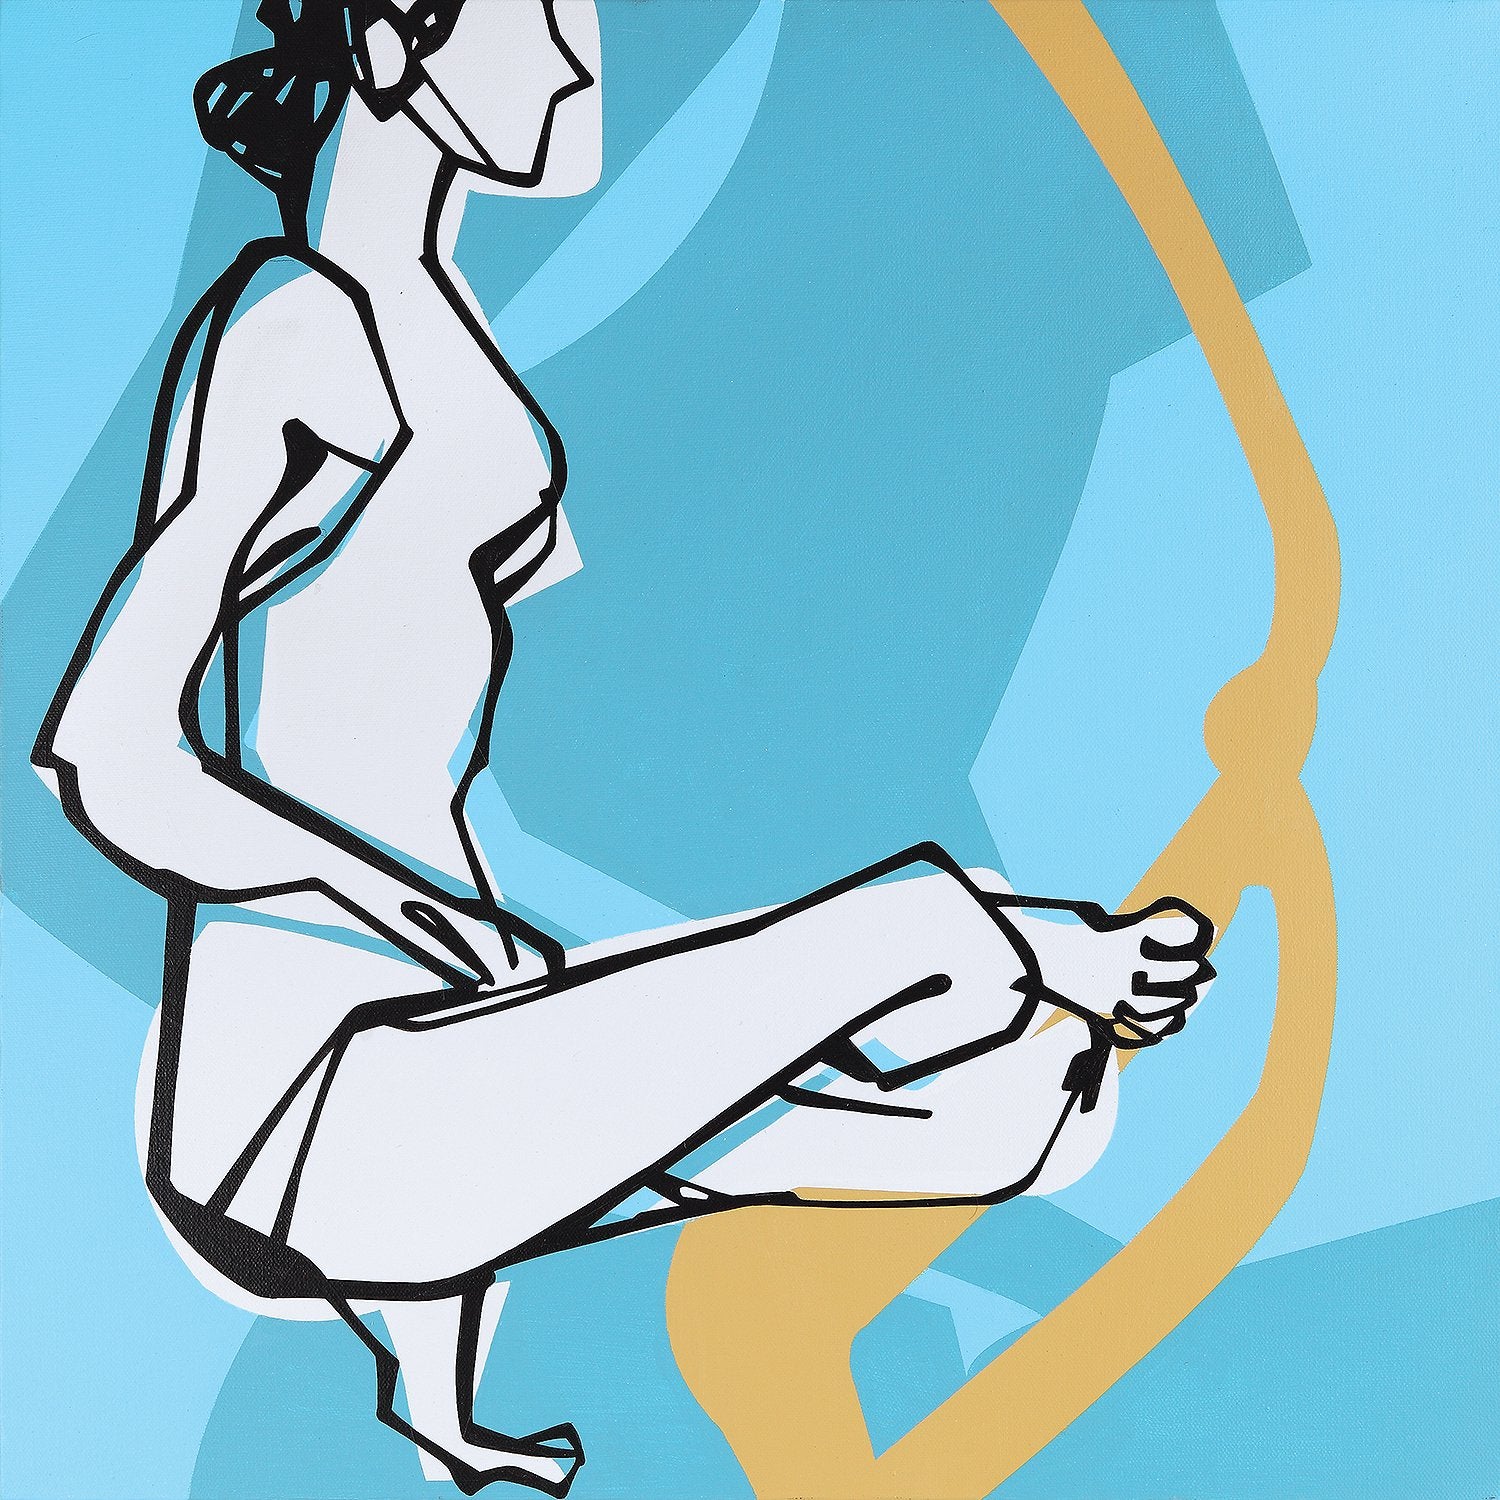 Yoga 43|S. Mark Rathinaraj- Acrylic on Canvas, , 24 x 24 inches